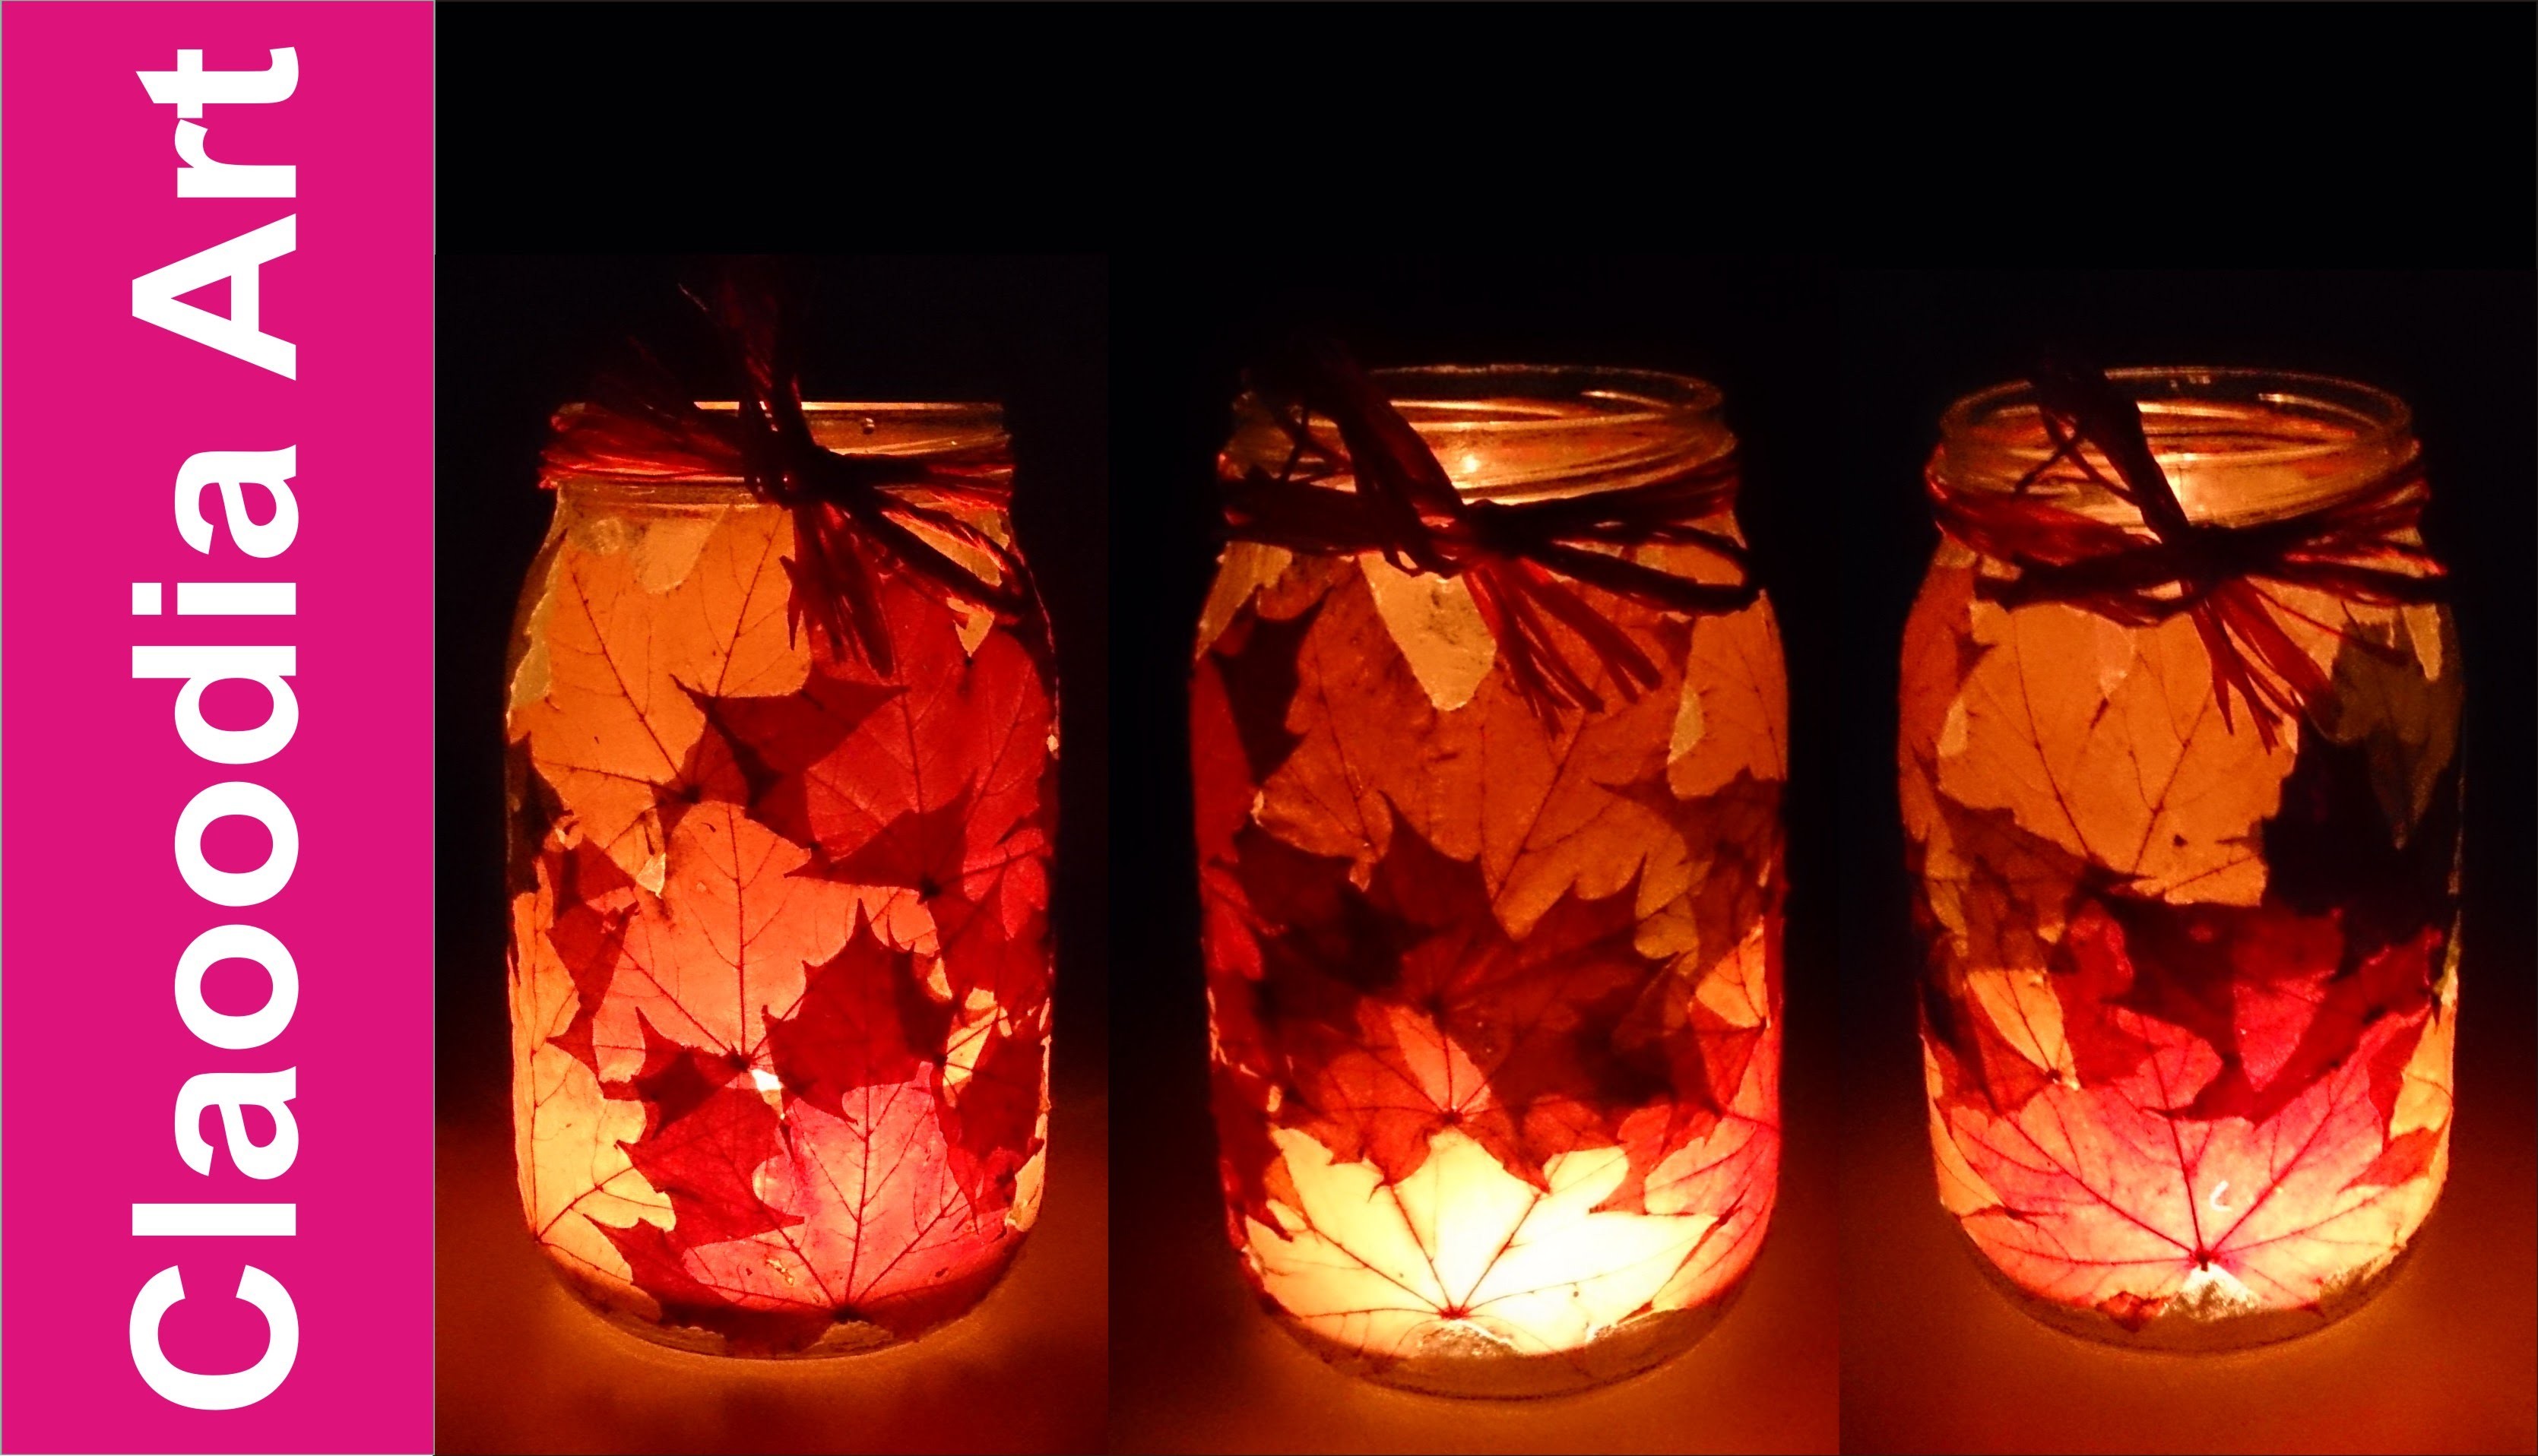 Jesienny świecznik z liśćmi [Autumn candlestick]